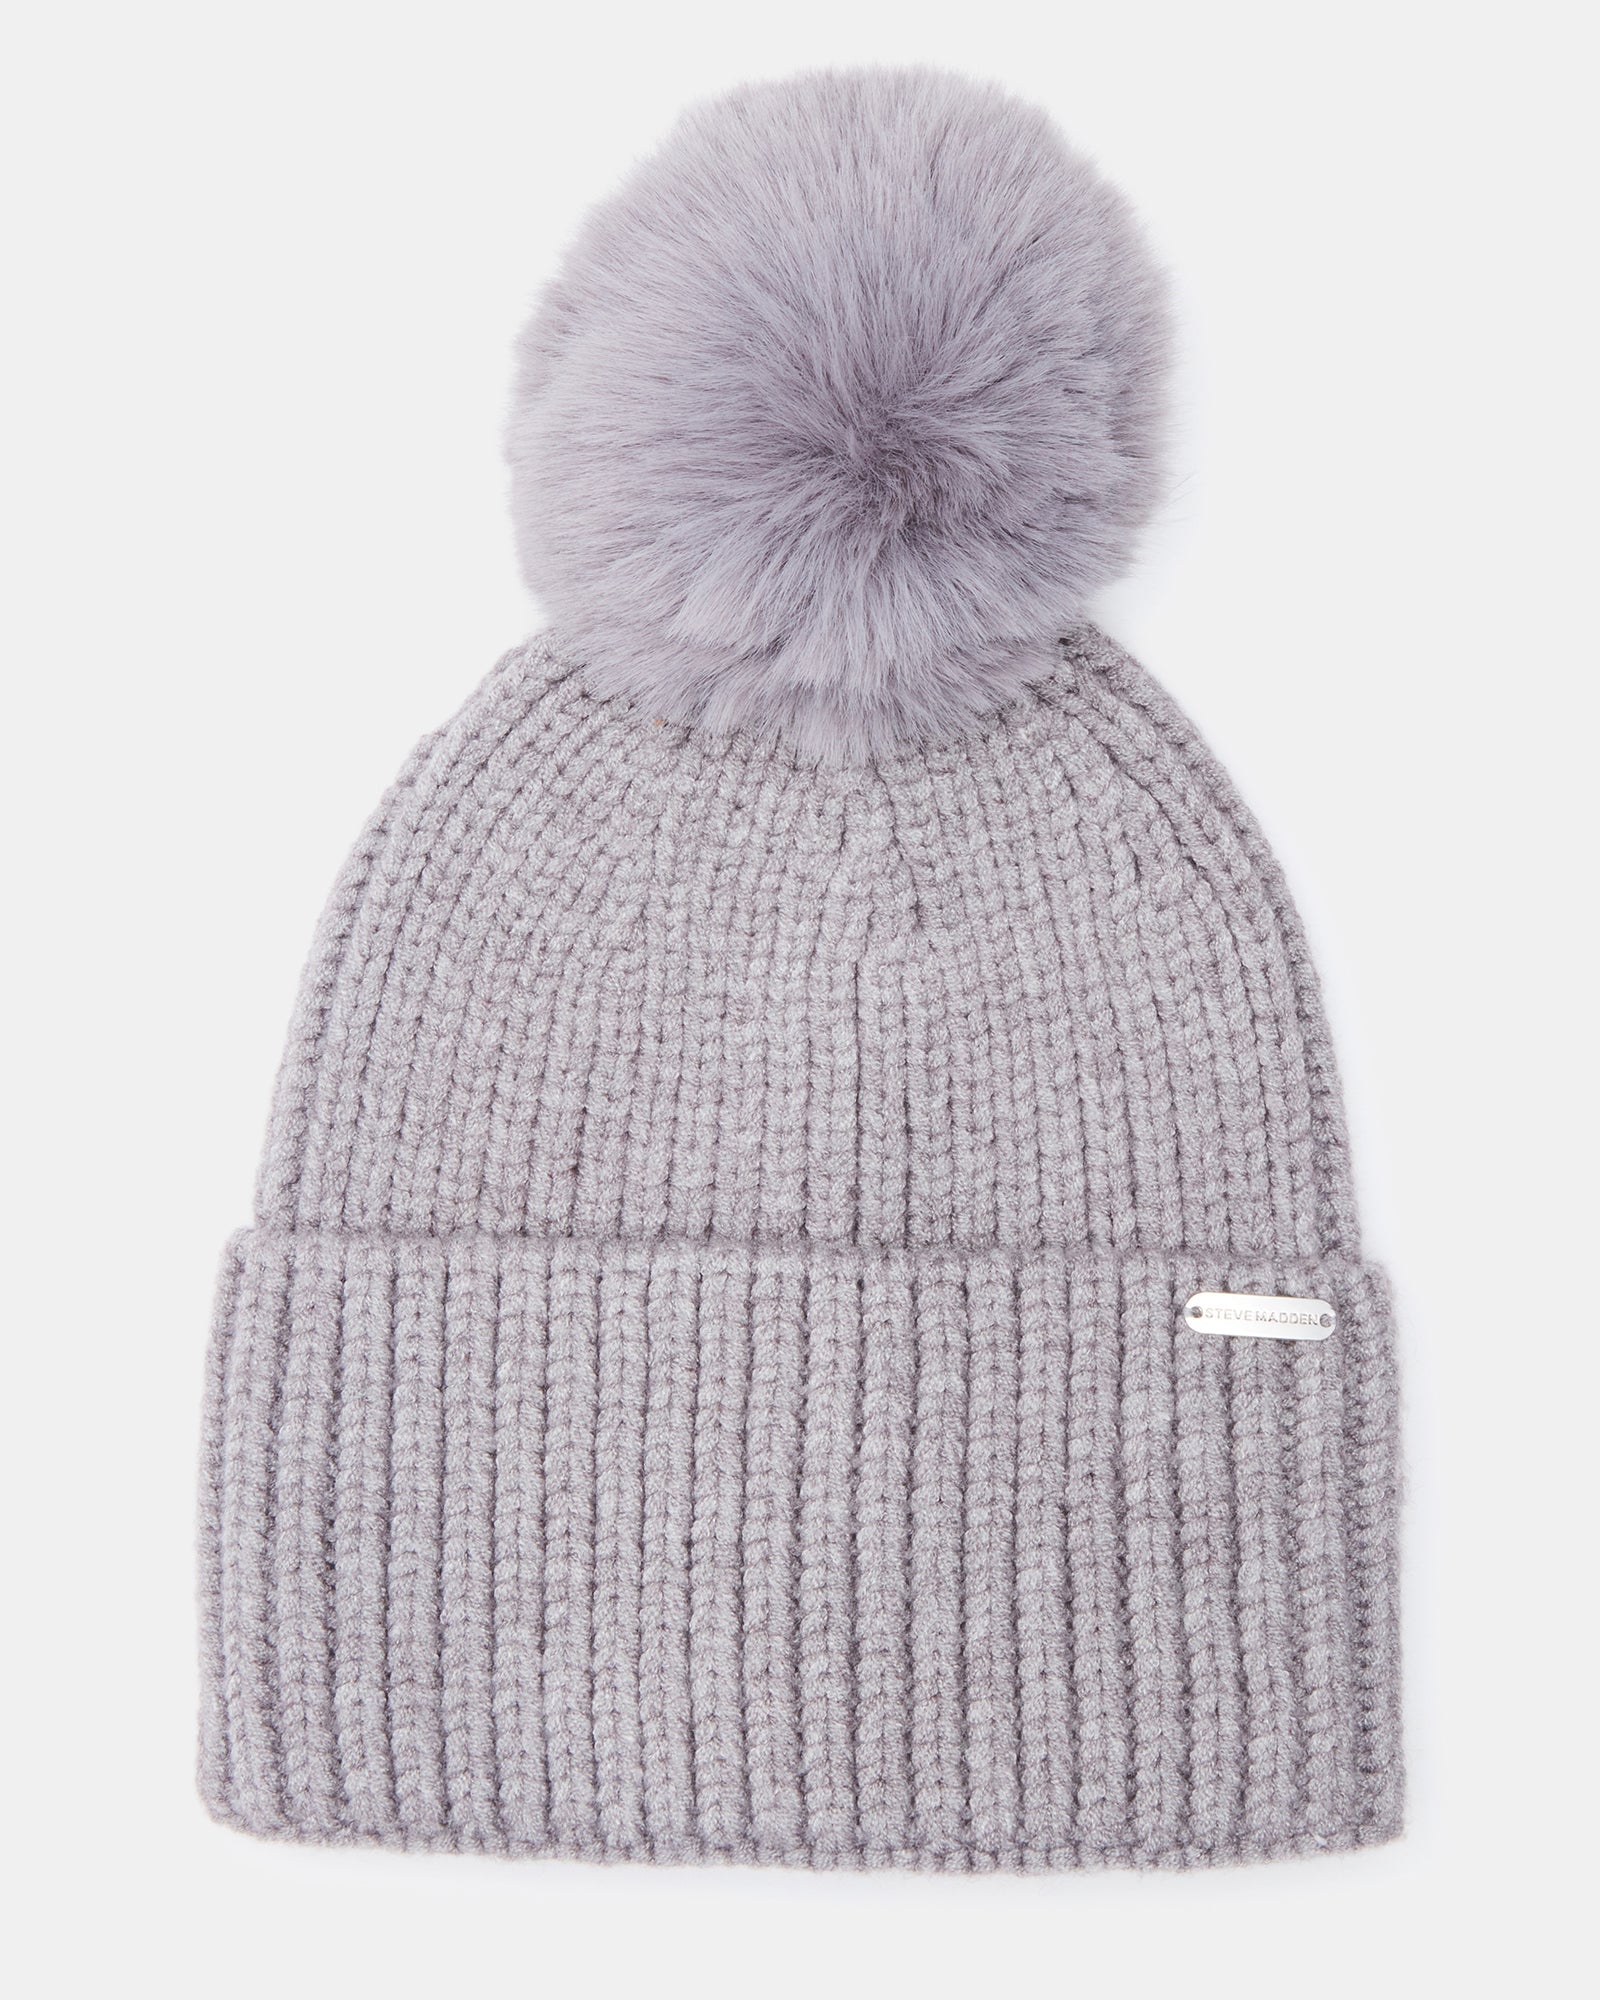 Designer Wool Caps Ck Custom Knit Beanies For Men And Women Winter